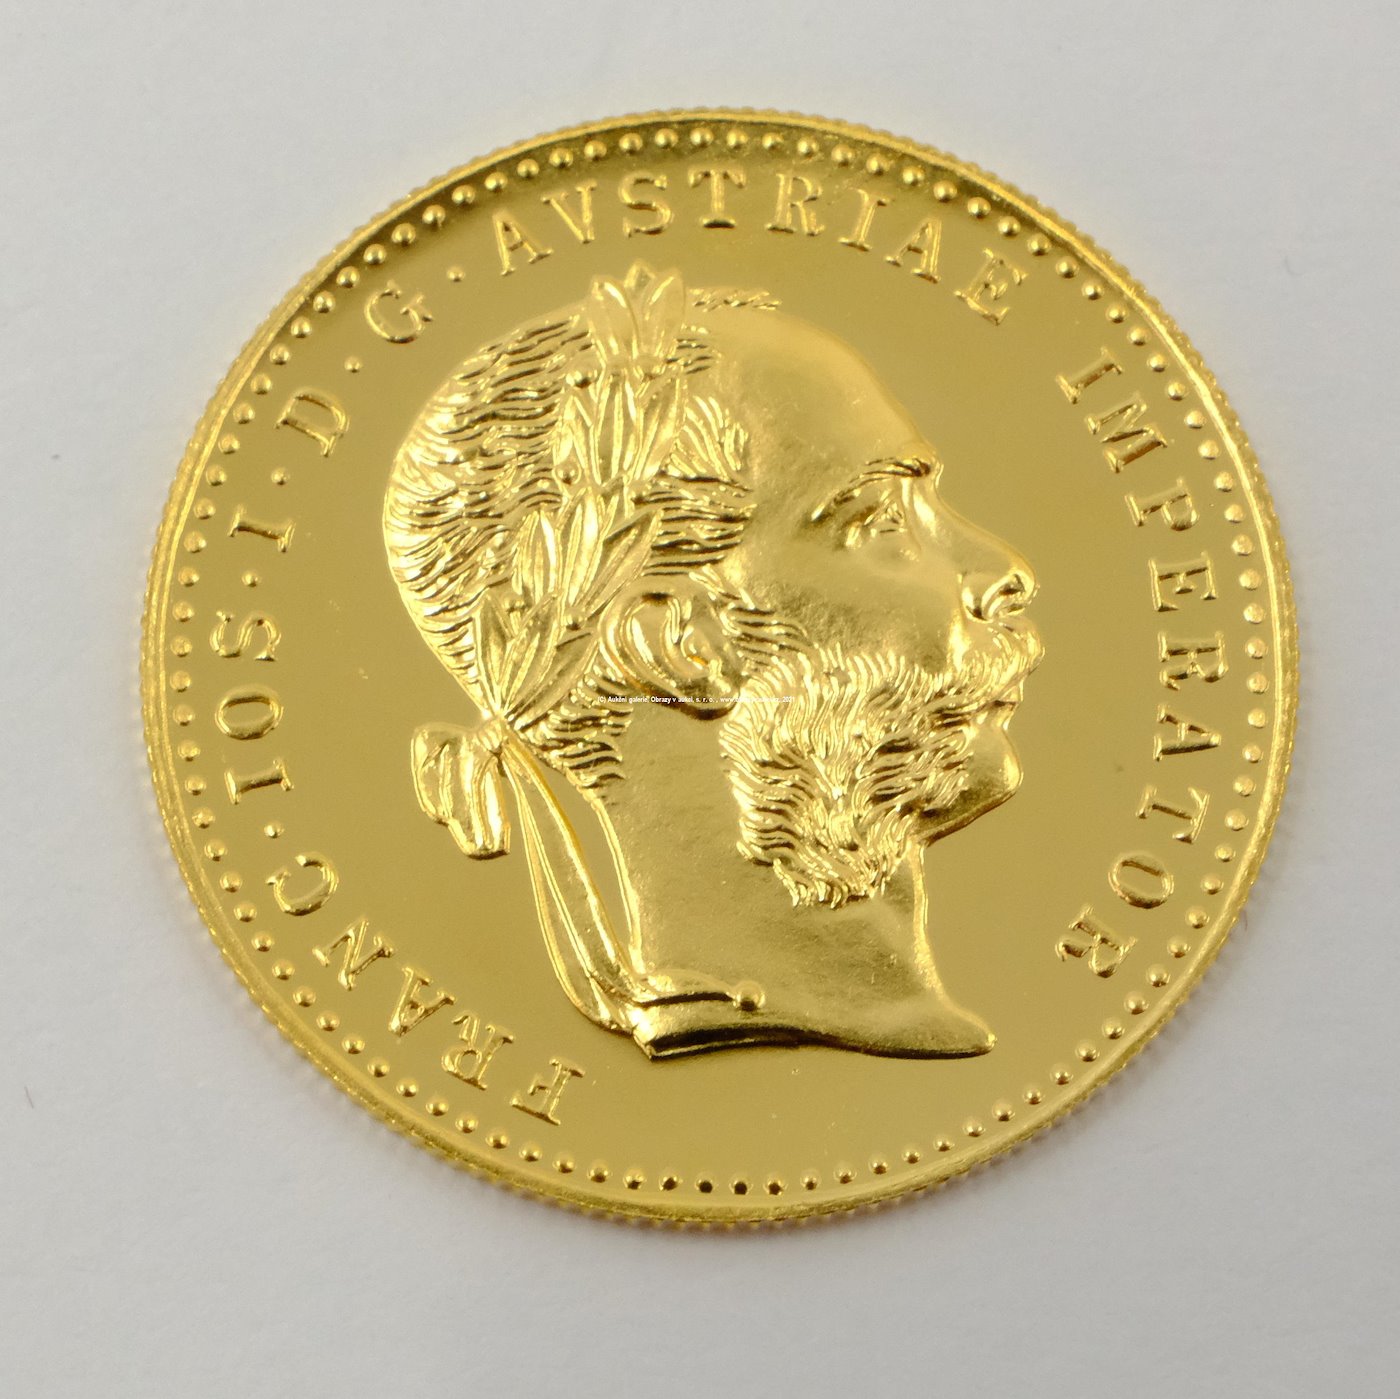 .. - Rakousko Uhersko zlatý 1 dukát 1915 pokračující ražba. Zlato 986/1000, hrubá hmotnost mince 3,491g